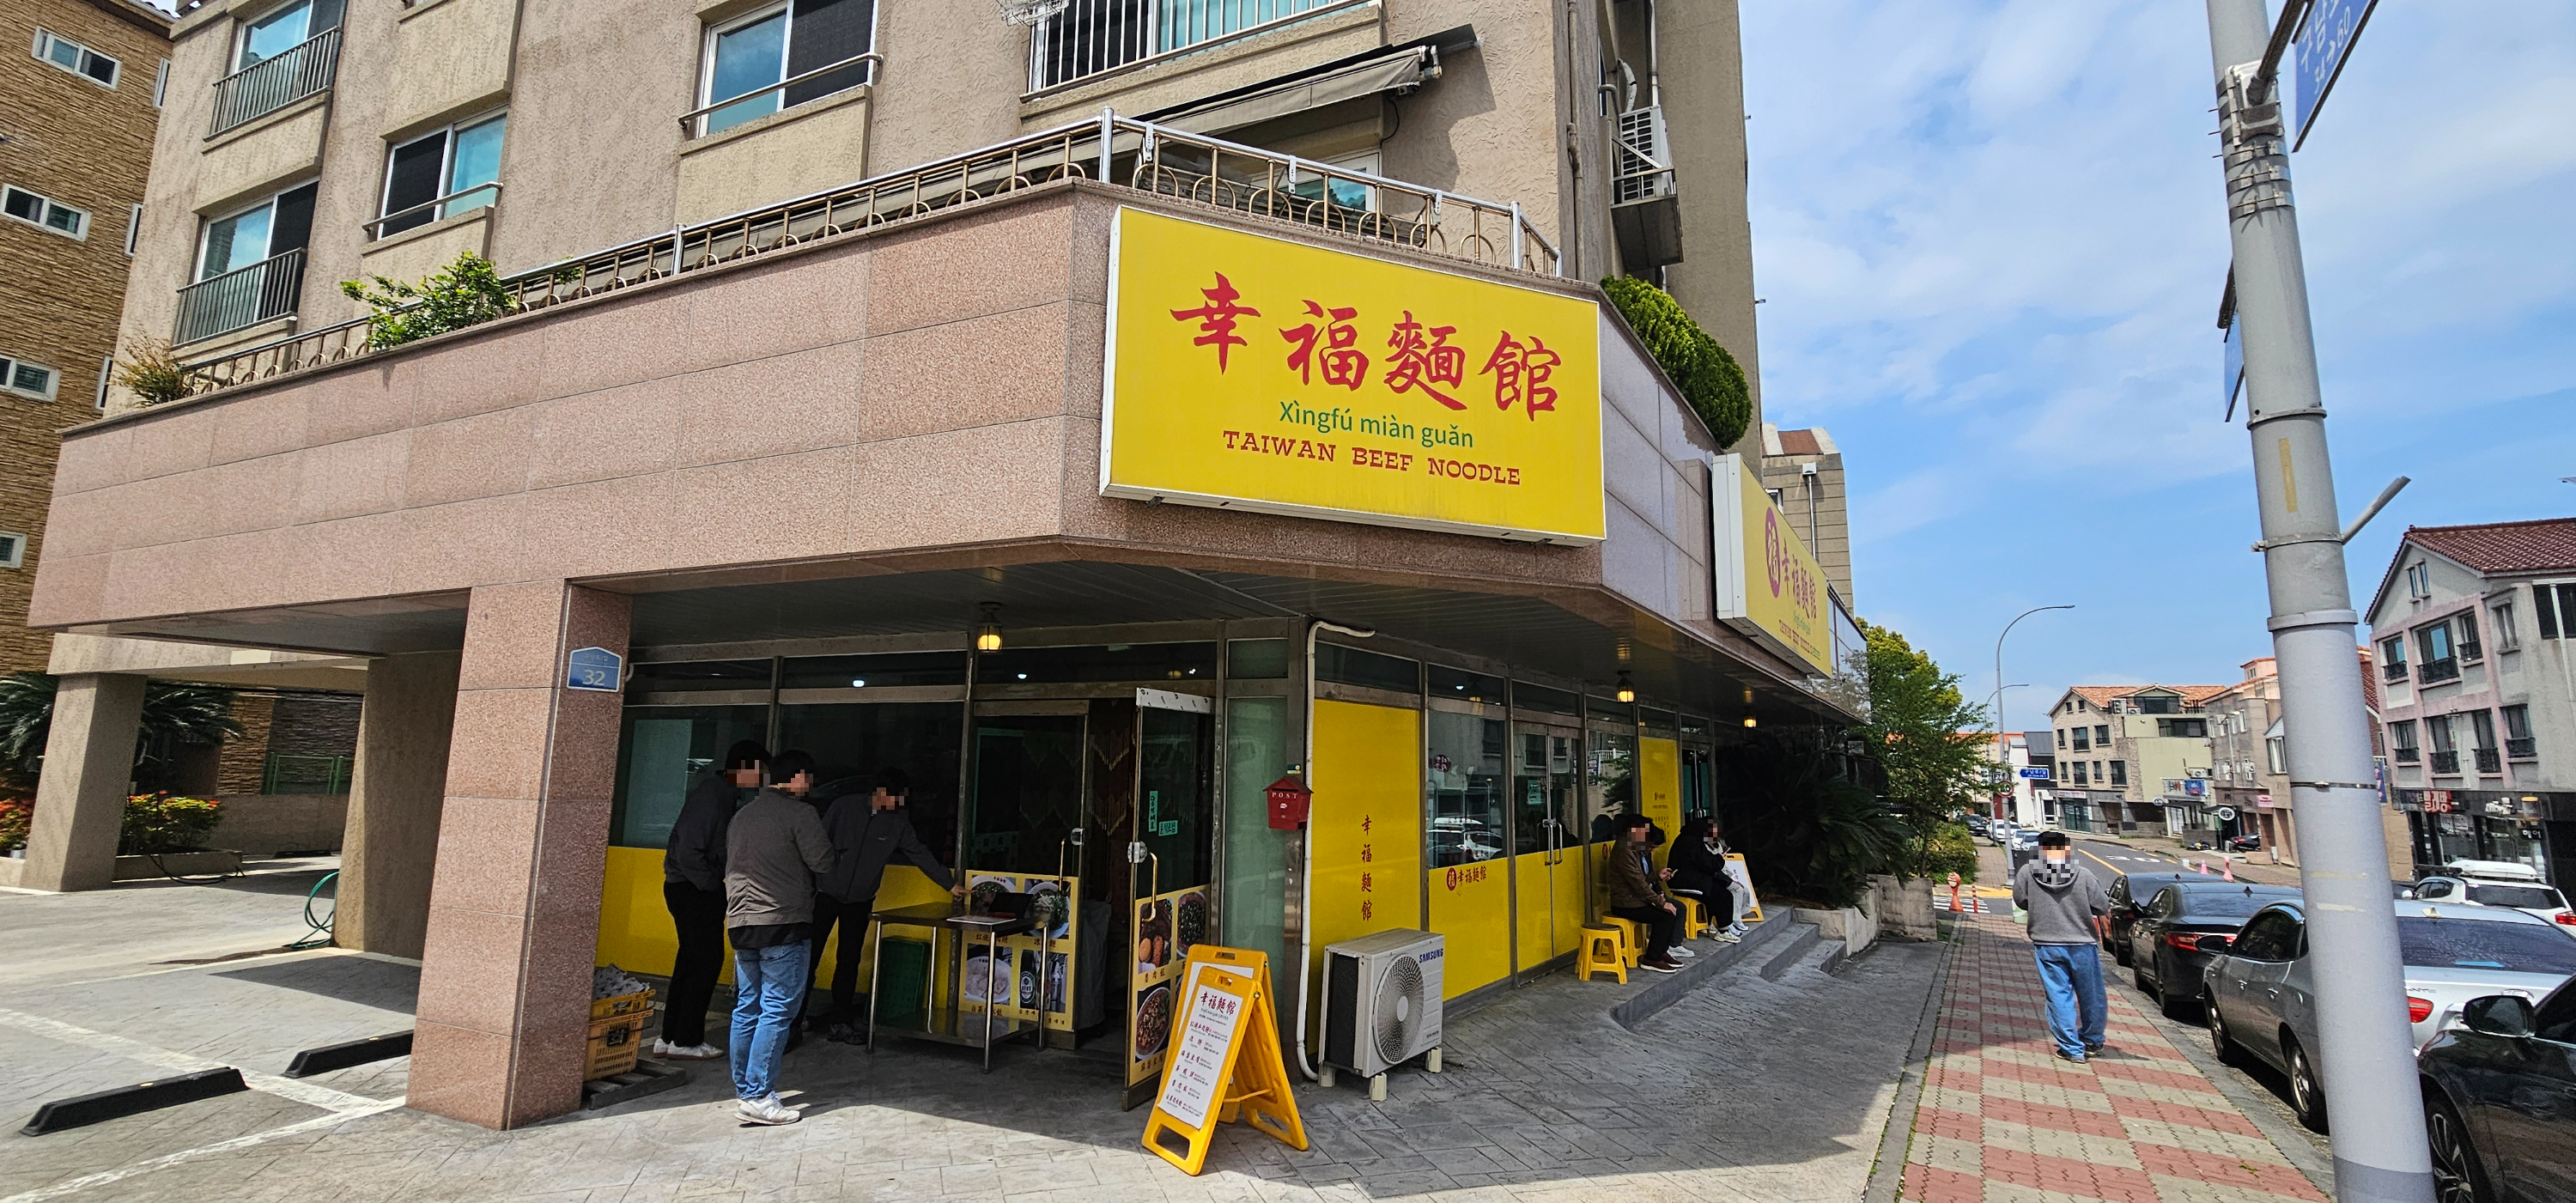 노란색 간판의 싱푸미엔관 제주지점 모습.